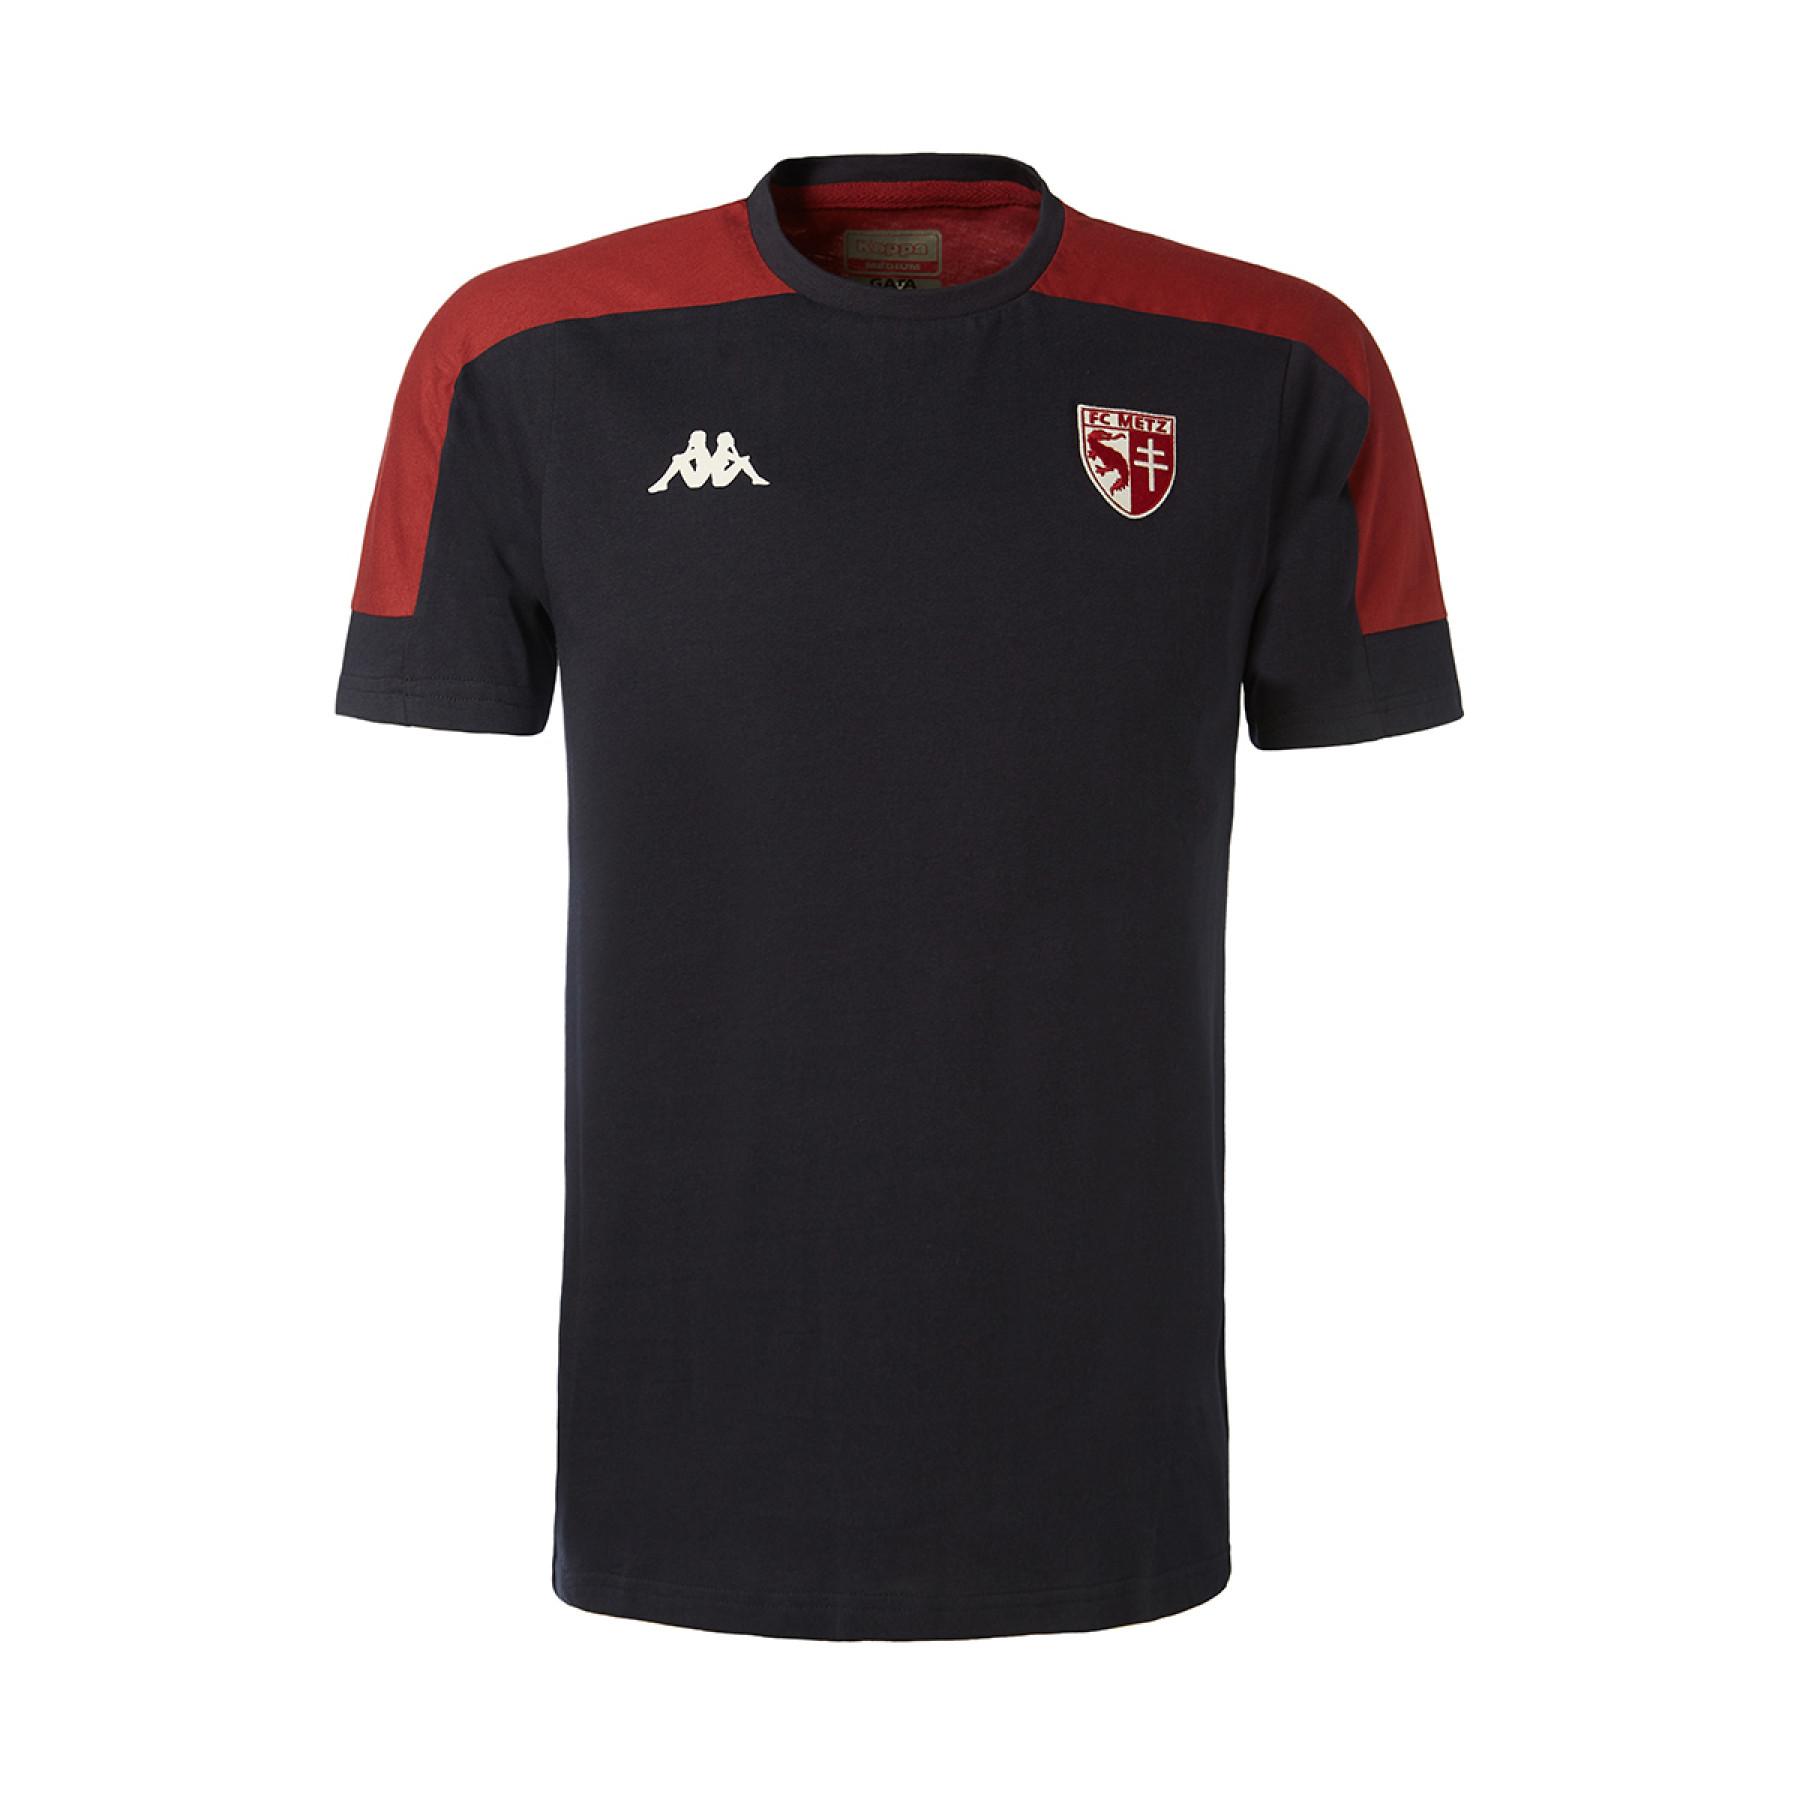 Kinder-T-Shirt FC Metz 2020/21 algardi